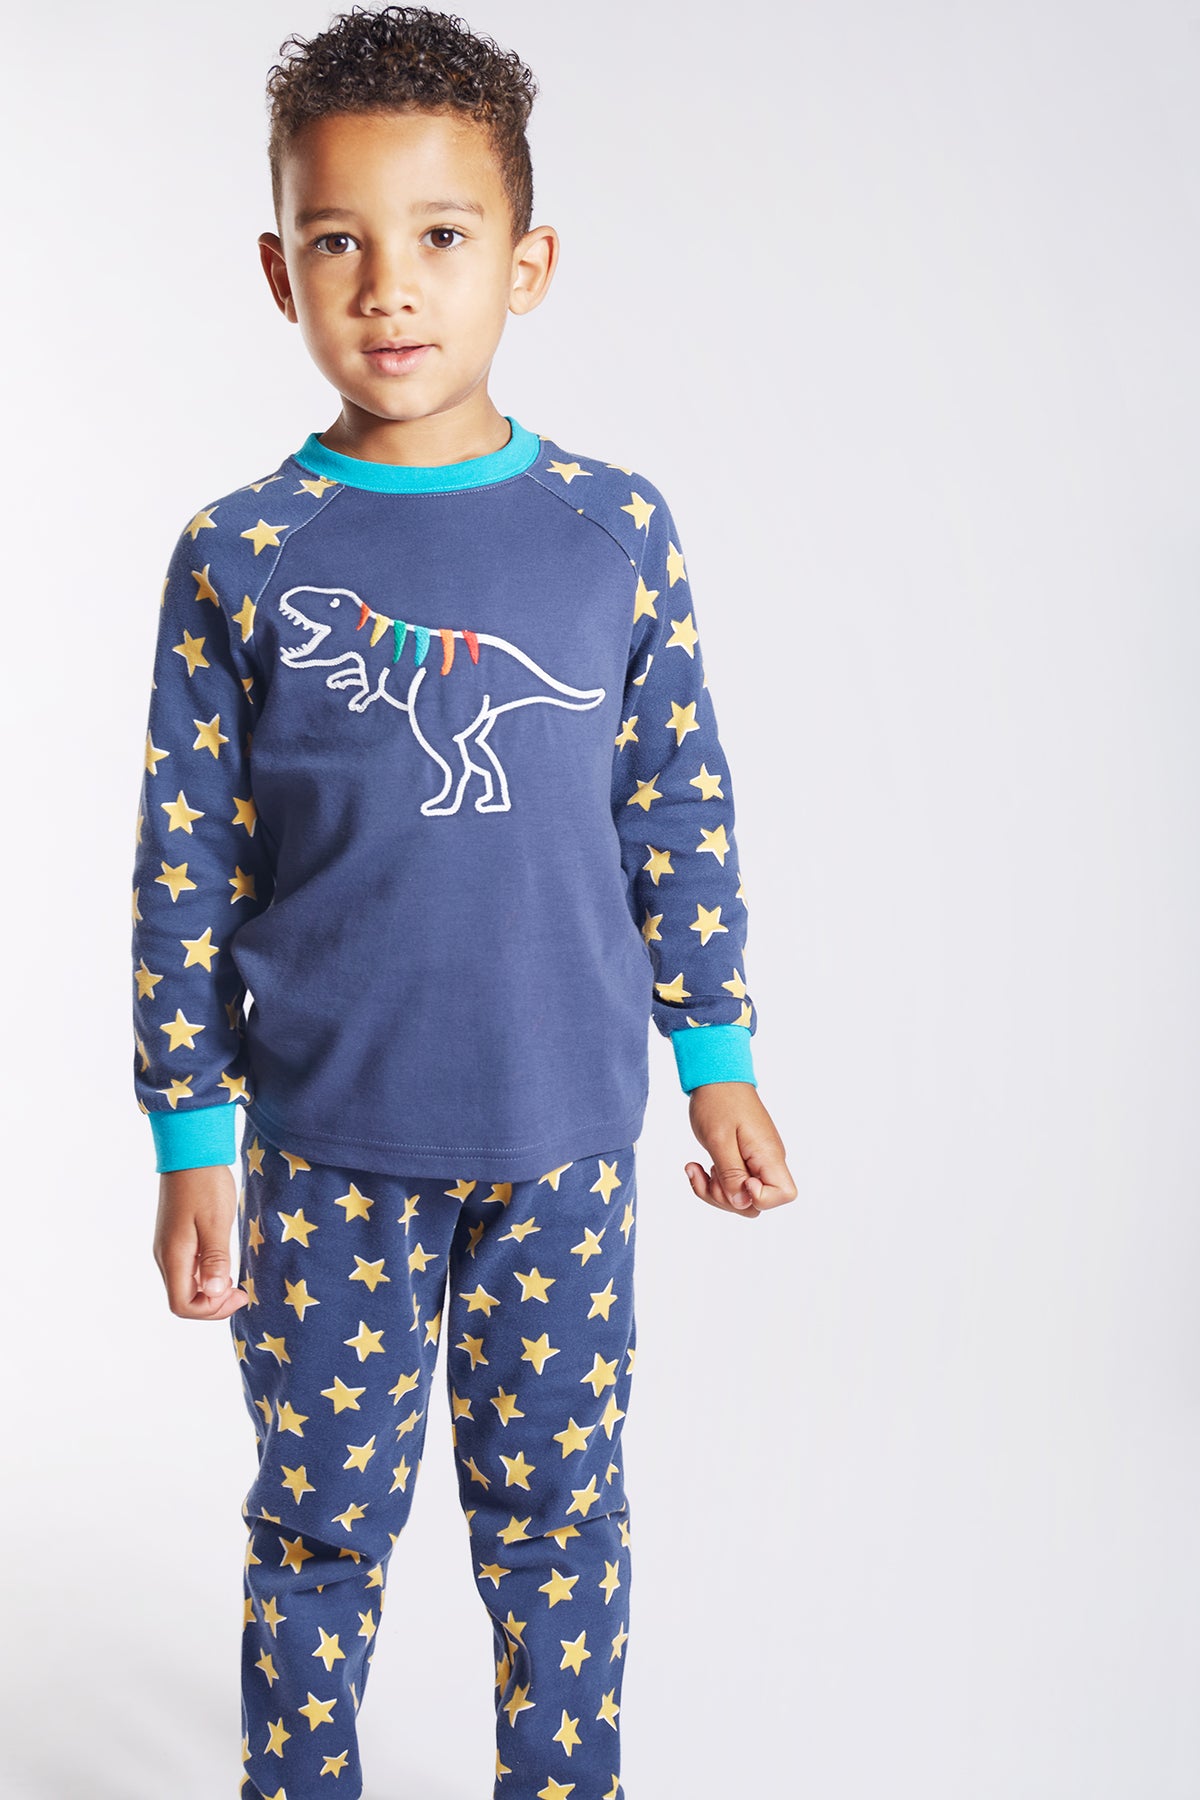 Pyjama Dino von Frugi